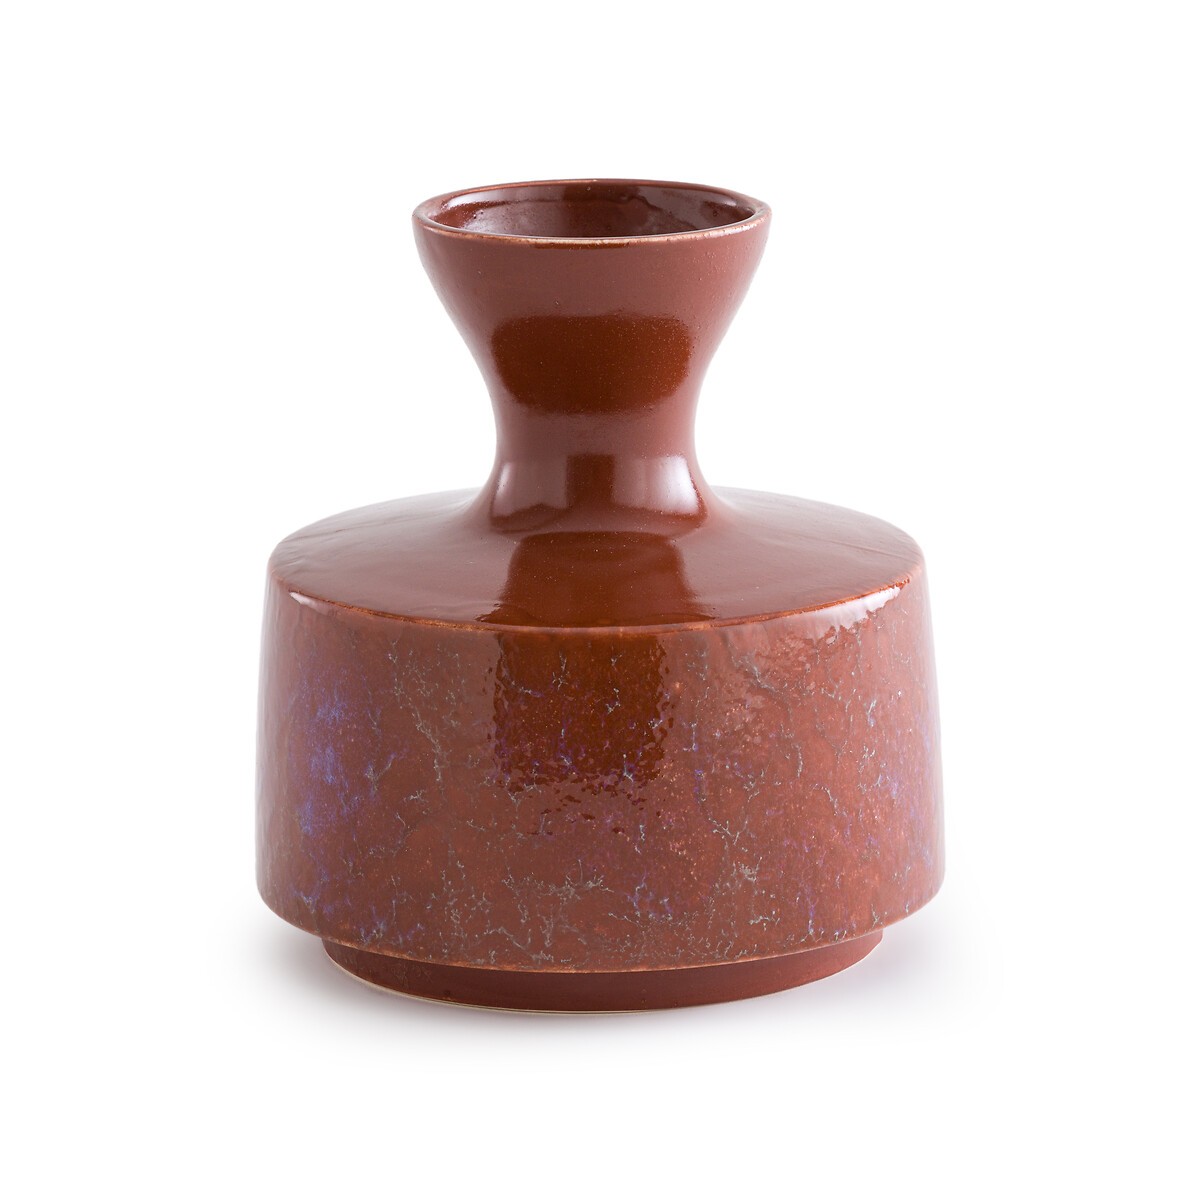 Medine Glazed Ceramic Vase